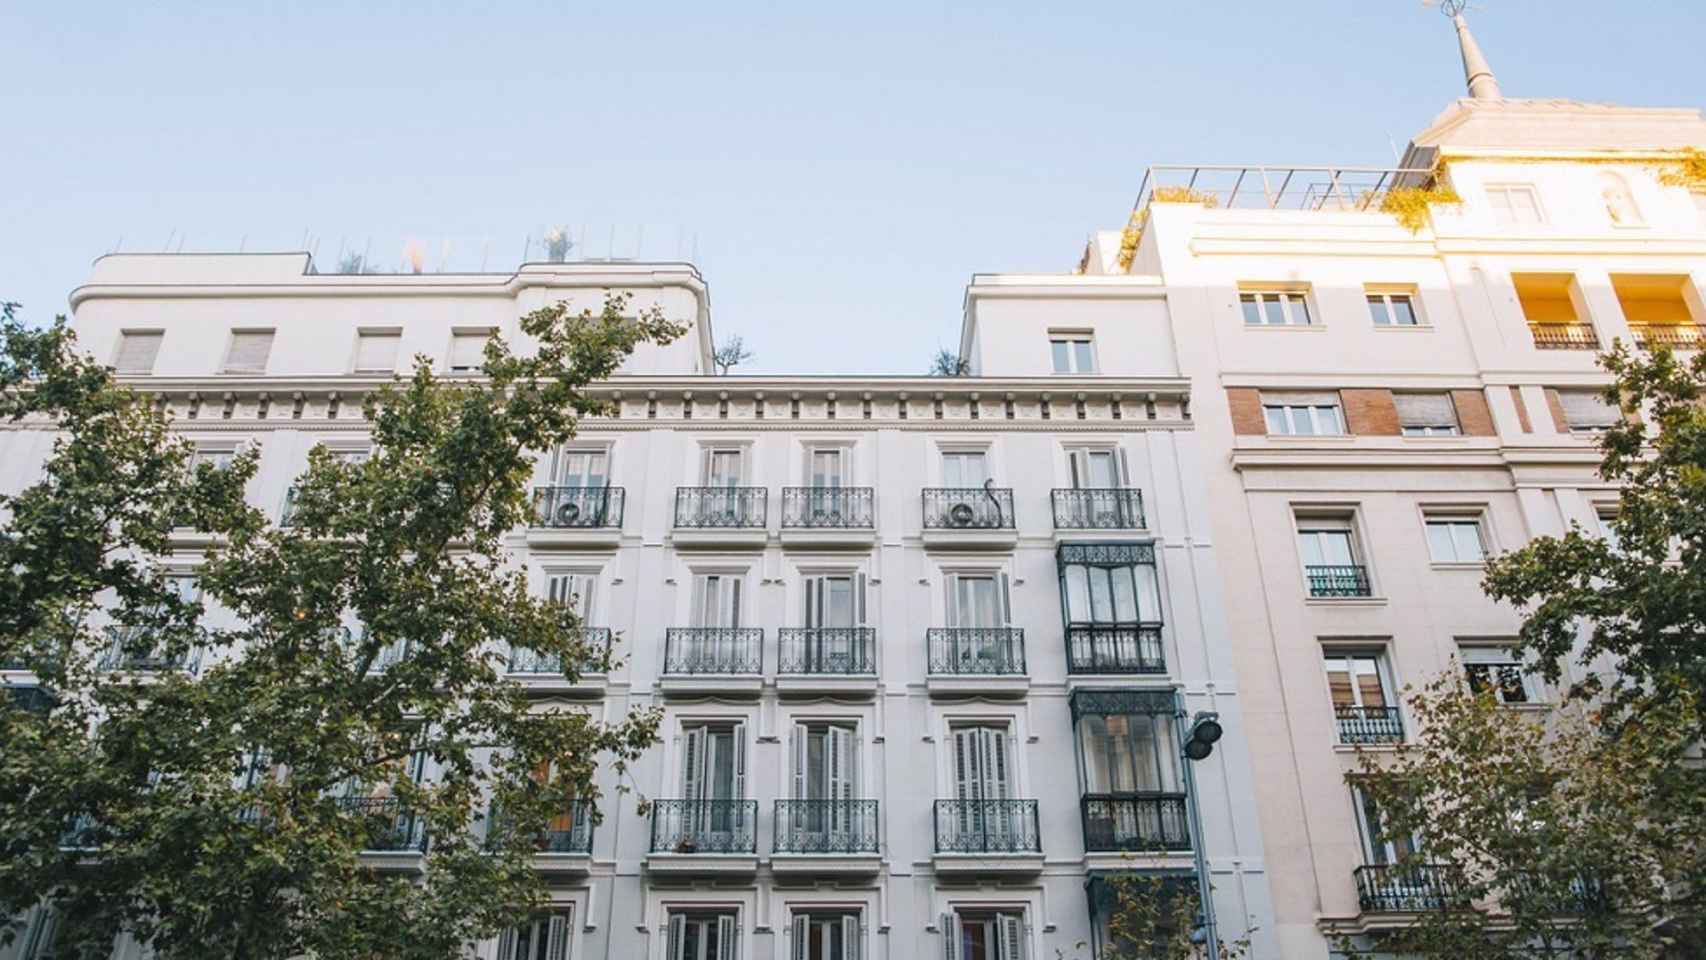 Bloque de viviendas en Barcelona / FOTOCASA